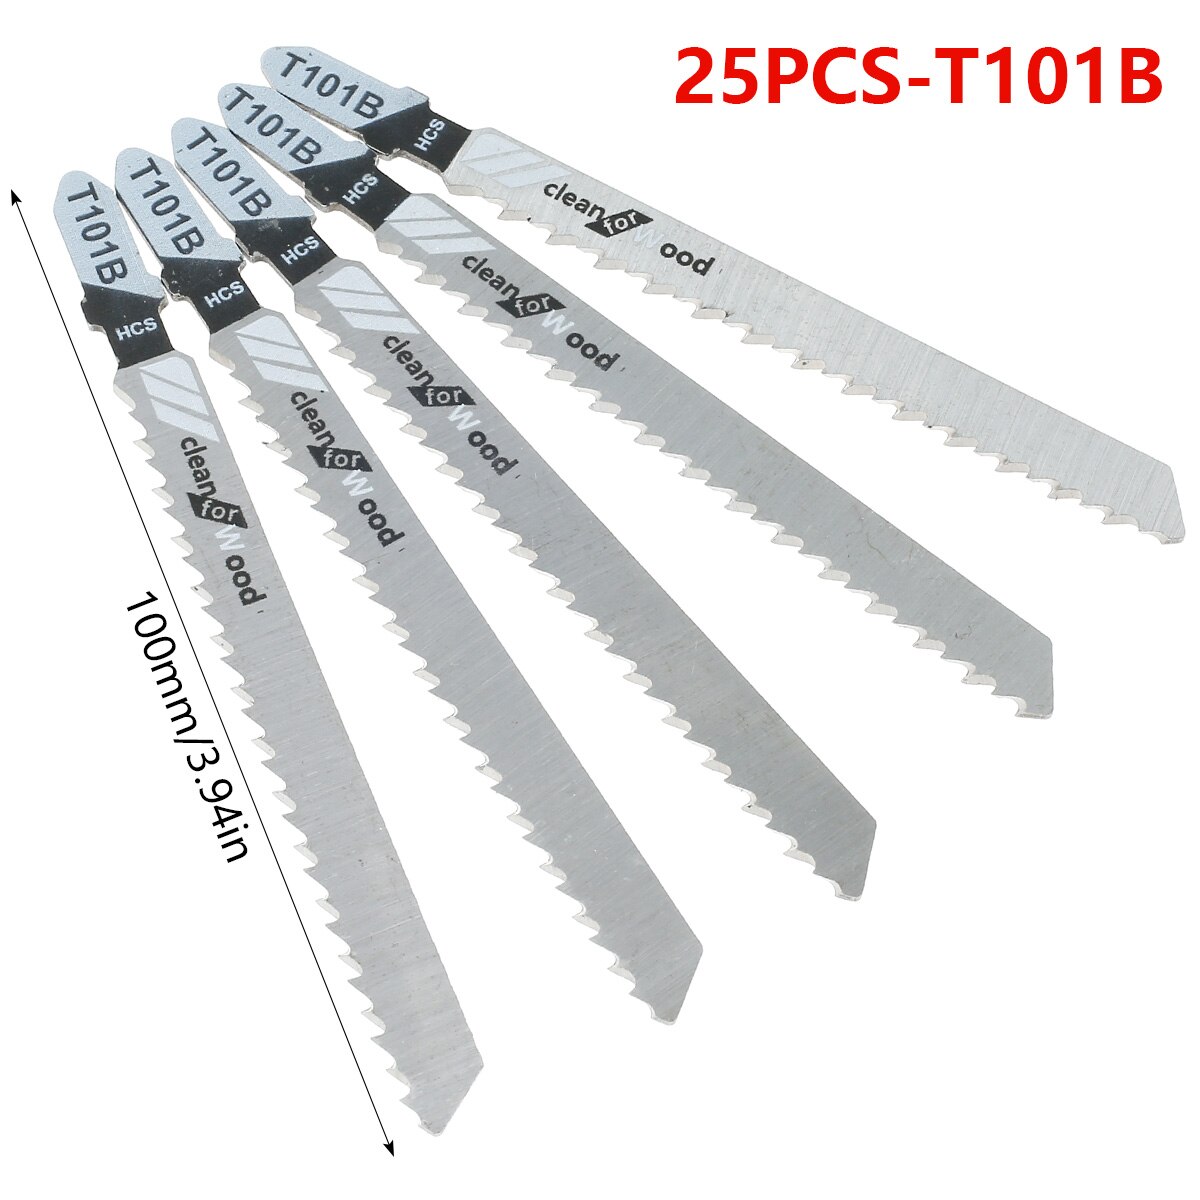 25 Stuks Jig Zaagblad Set Hcs Zaagbladen T-Schacht Snelle Cut Down Jigsaw Blade Jig Saw Cutter accessoires T101AO /T101B /T111C/T101BR: 25PCS T101B 100mm